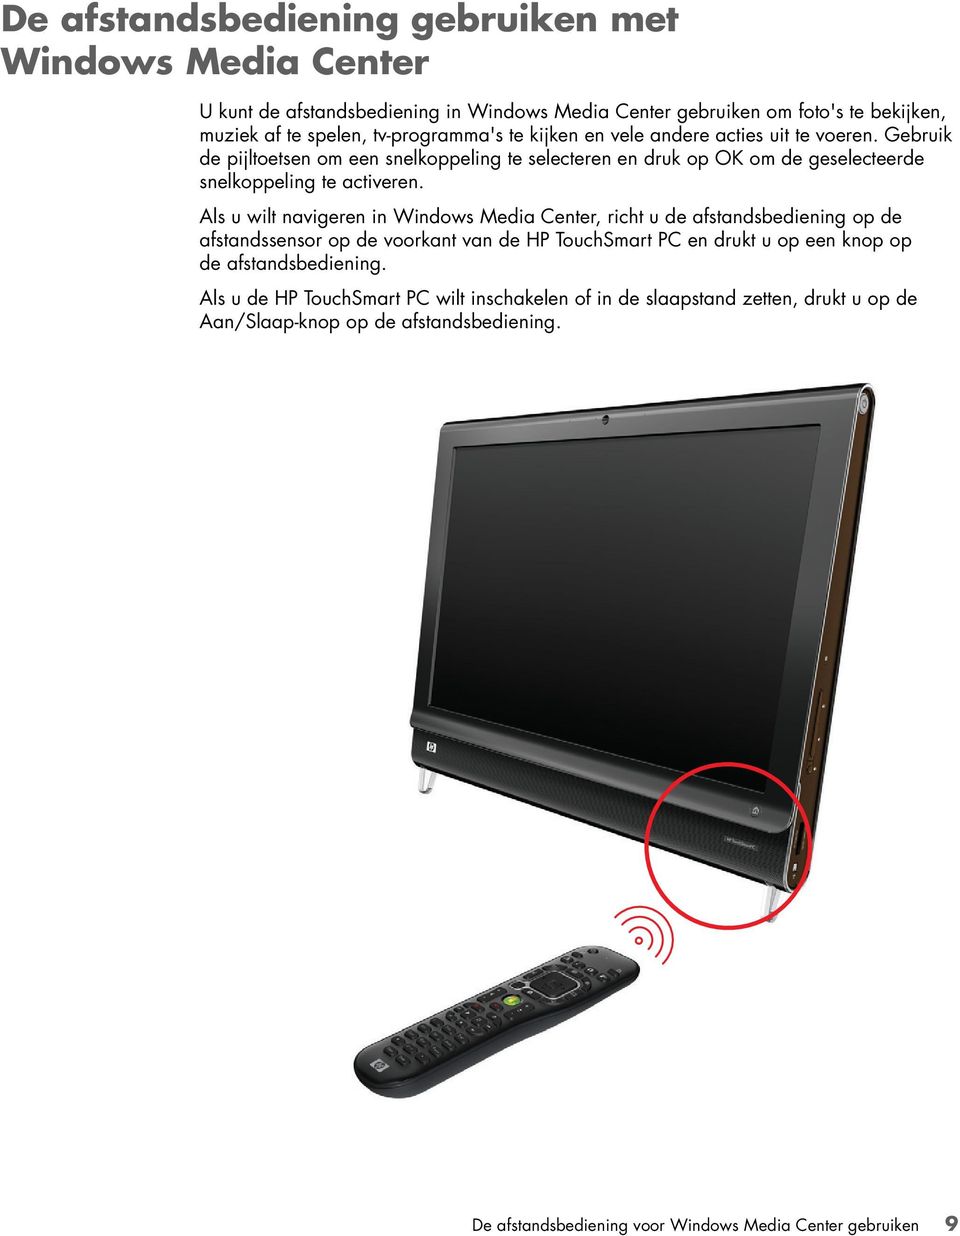 Als u wilt navigeren in Windows Media Center, richt u de afstandsbediening op de afstandssensor op de voorkant van de HP TouchSmart PC en drukt u op een knop op de